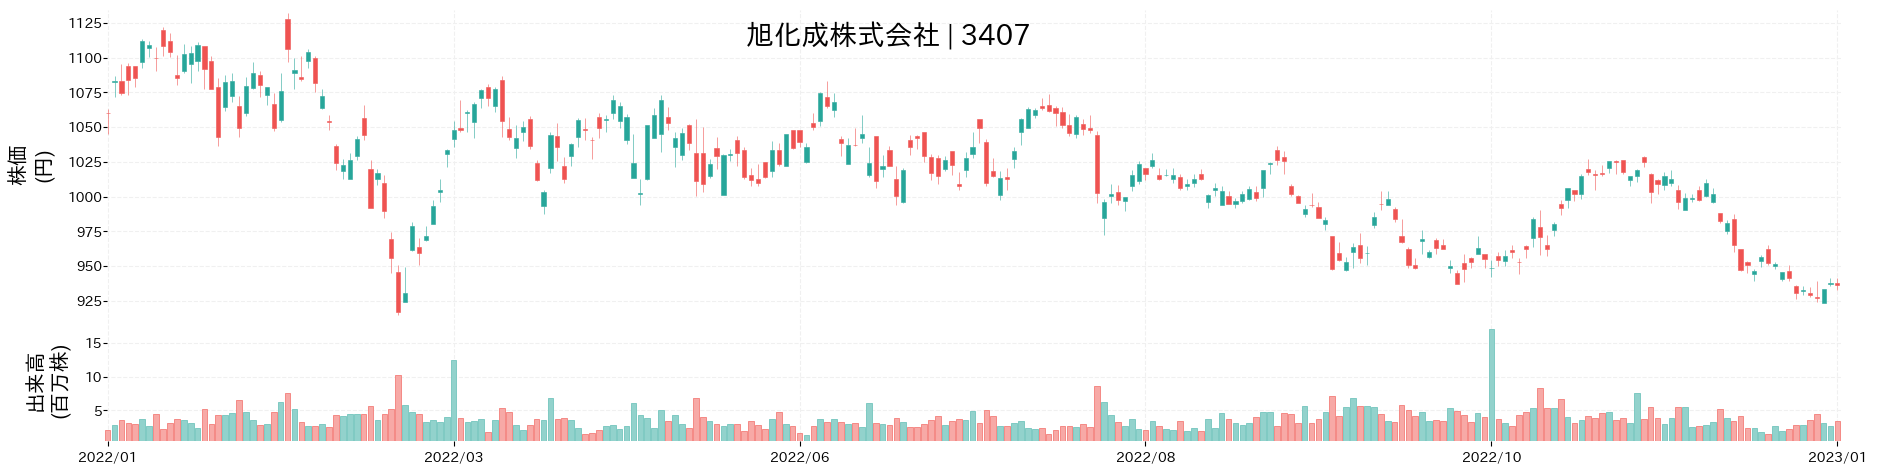 旭化成の株価推移(2022)